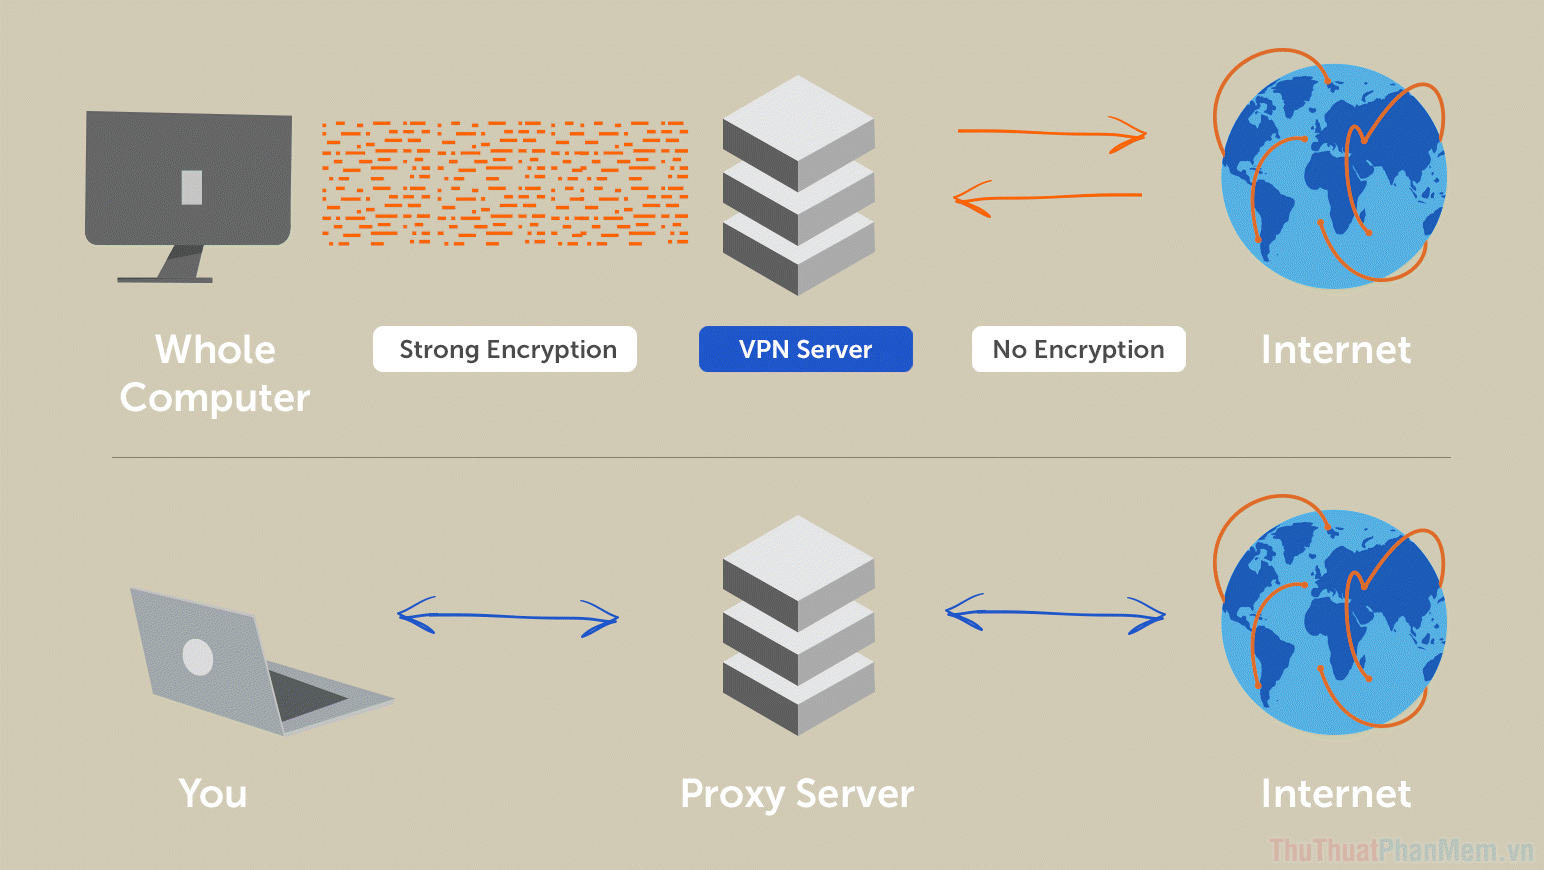 VPN có giao thức kết nối mạng phức tạp hơn khi toàn bộ dữ liệu gửi đi đều được mã hoá trước khi đến các hệ thống trung gian